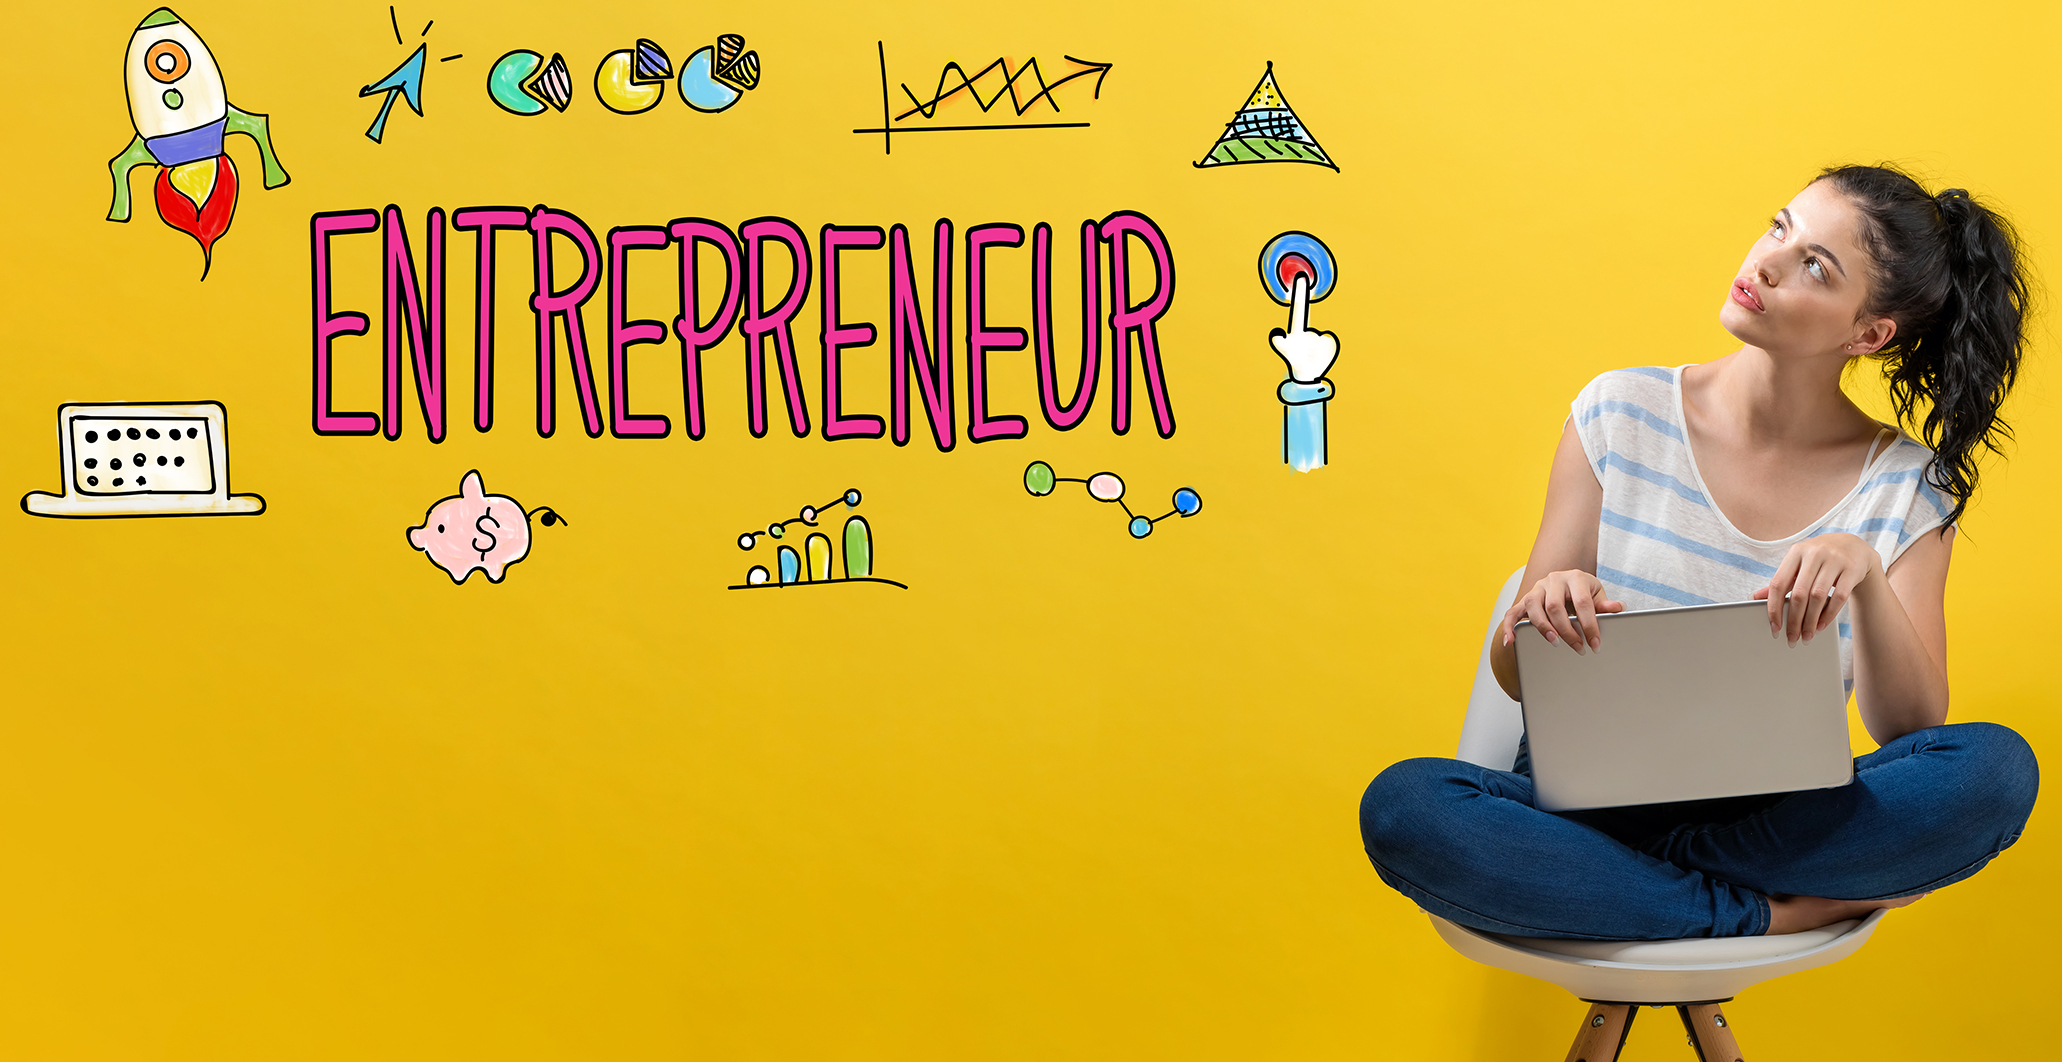 Teen Entrepreneur Series – How YOU Can Become an Entrepreneur